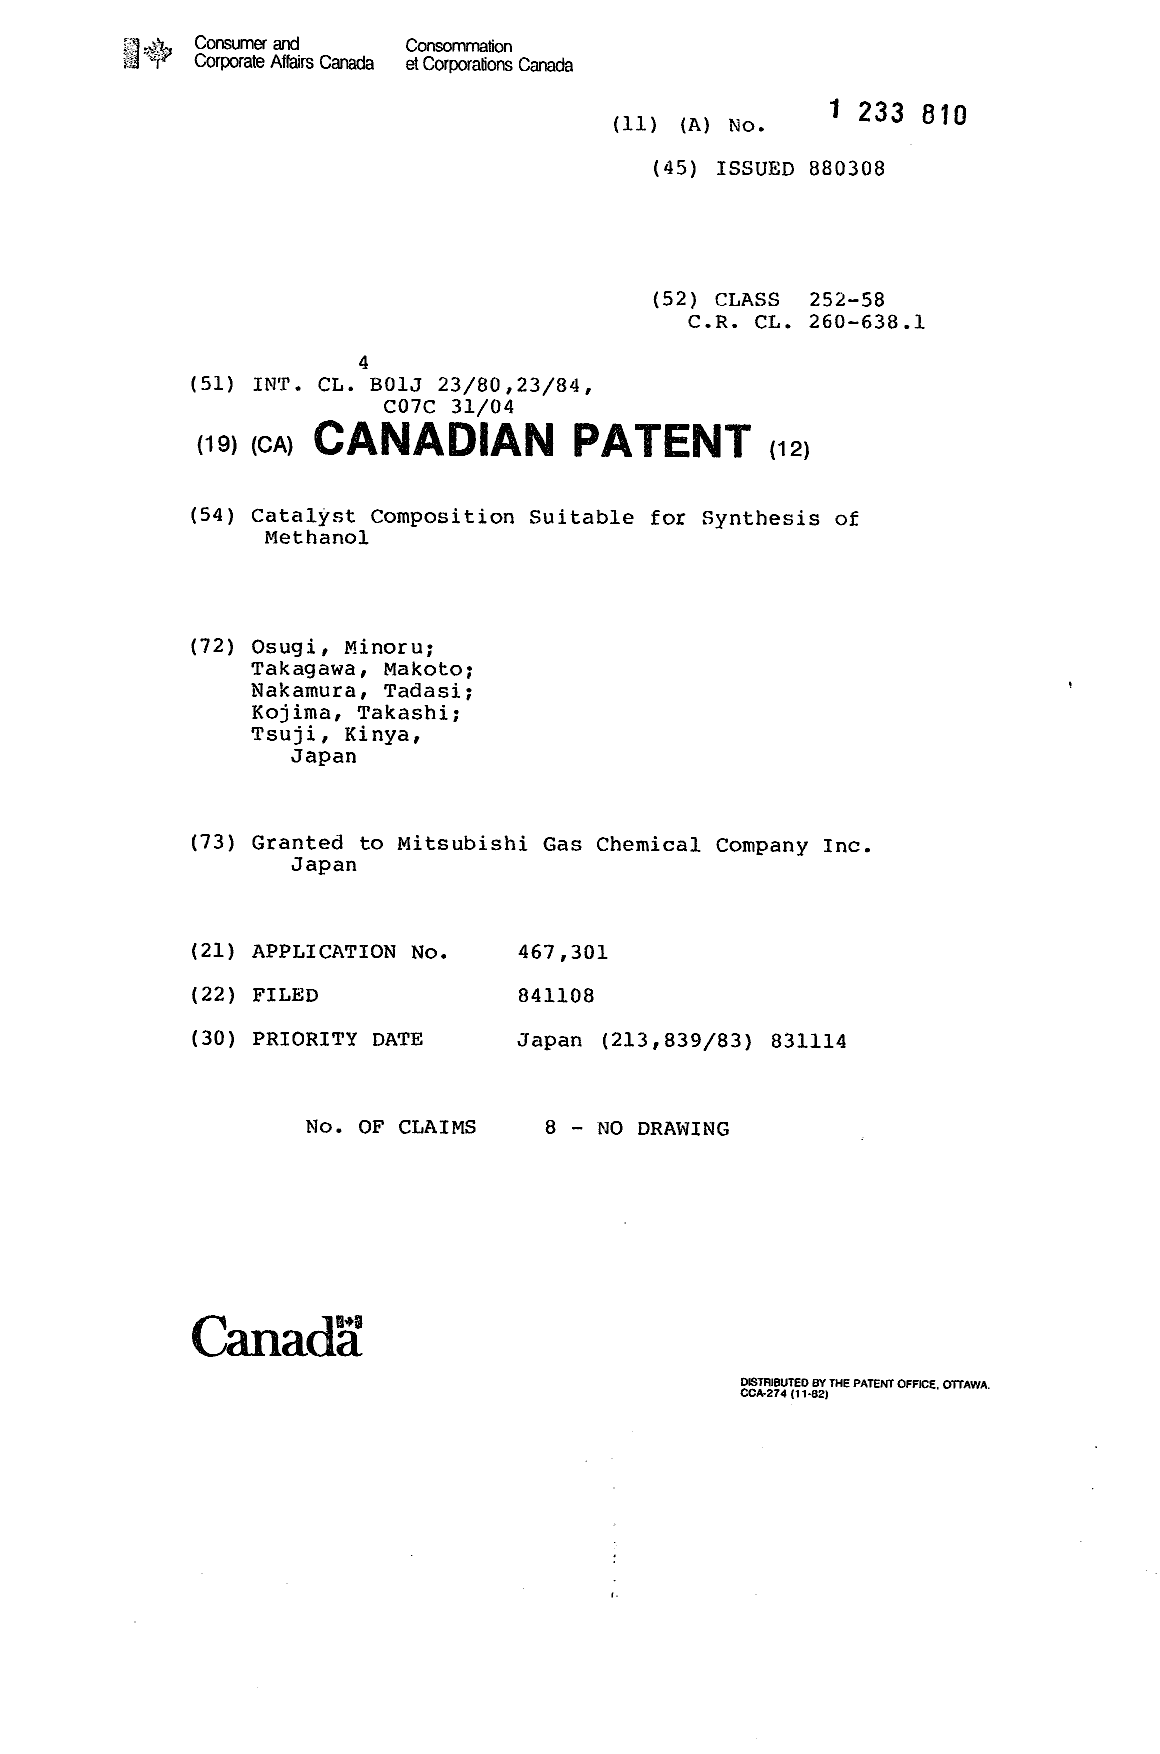 Document de brevet canadien 1233810. Page couverture 19930929. Image 1 de 1